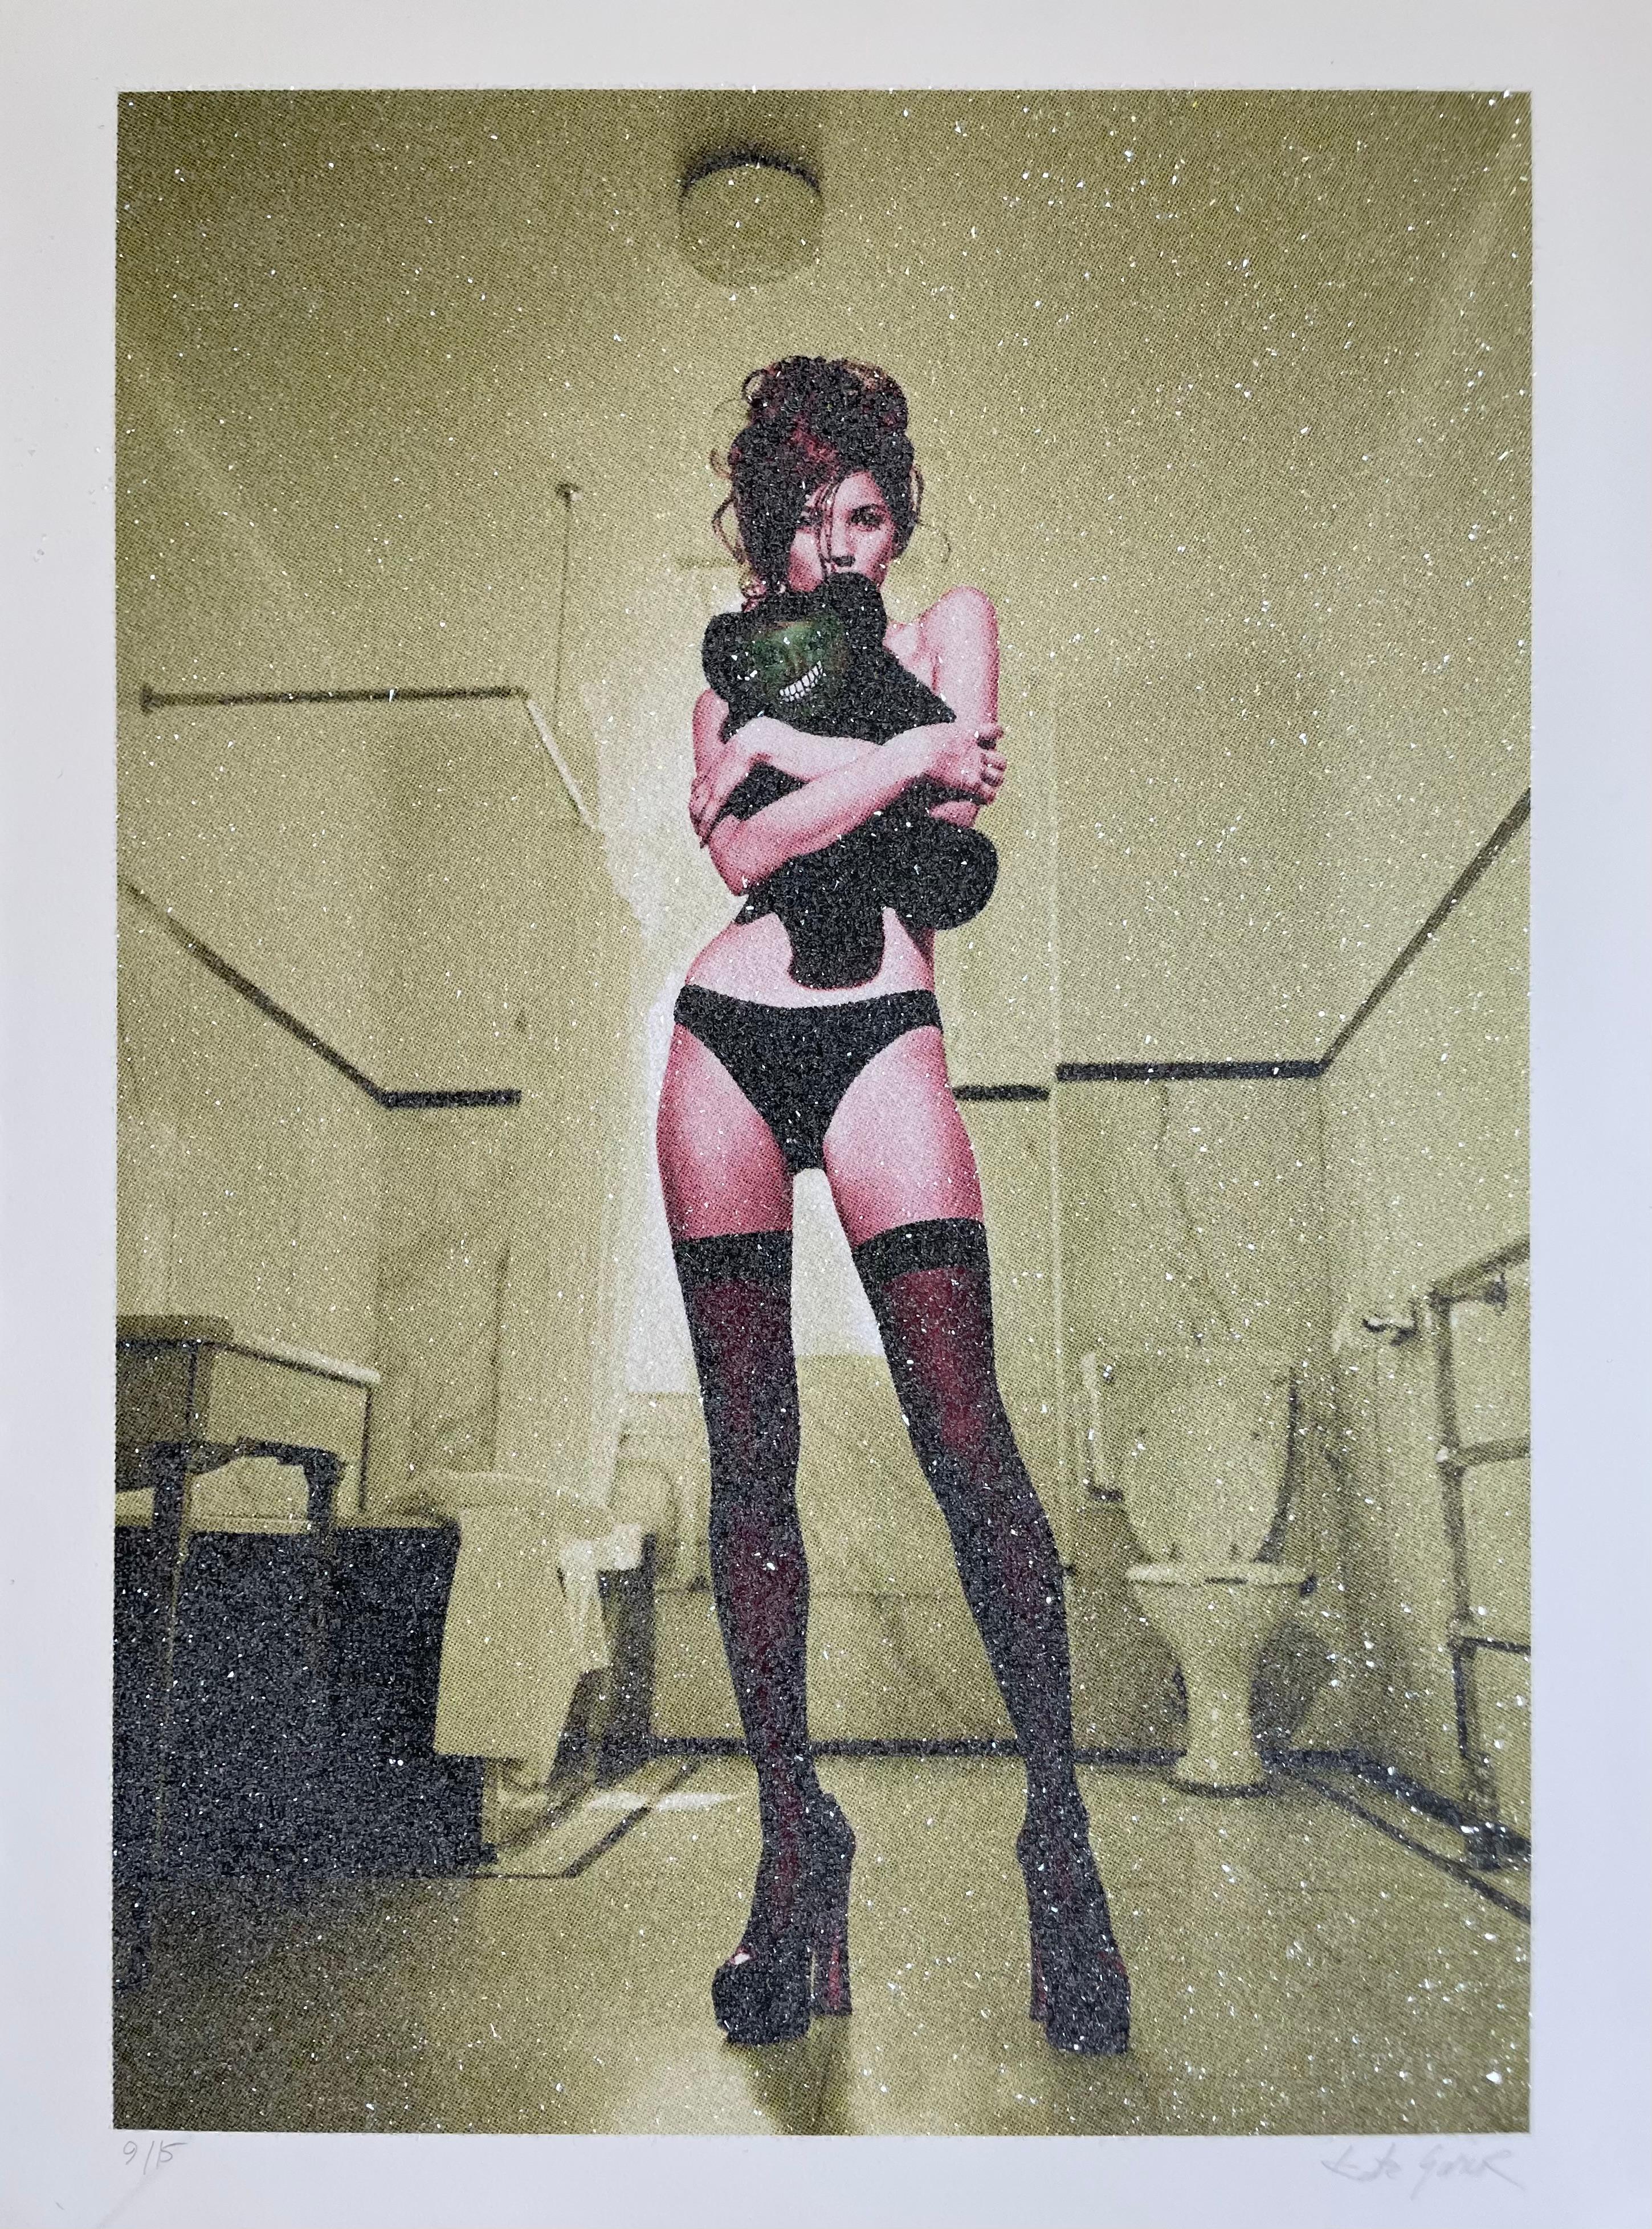 "Kate Moss (DD gelb)" Fotodruck 25,5 × 19 in Ed. 9/15 von Kate Garner

Nummeriert und signiert auf der Vorderseite. 

Hochwertiger Druck auf Hahnemuhle-Papier mit Archivtinte, vollständig mit rosa Diamantstaub bedeckt. 

Nicht gerahmt. Wird in einem